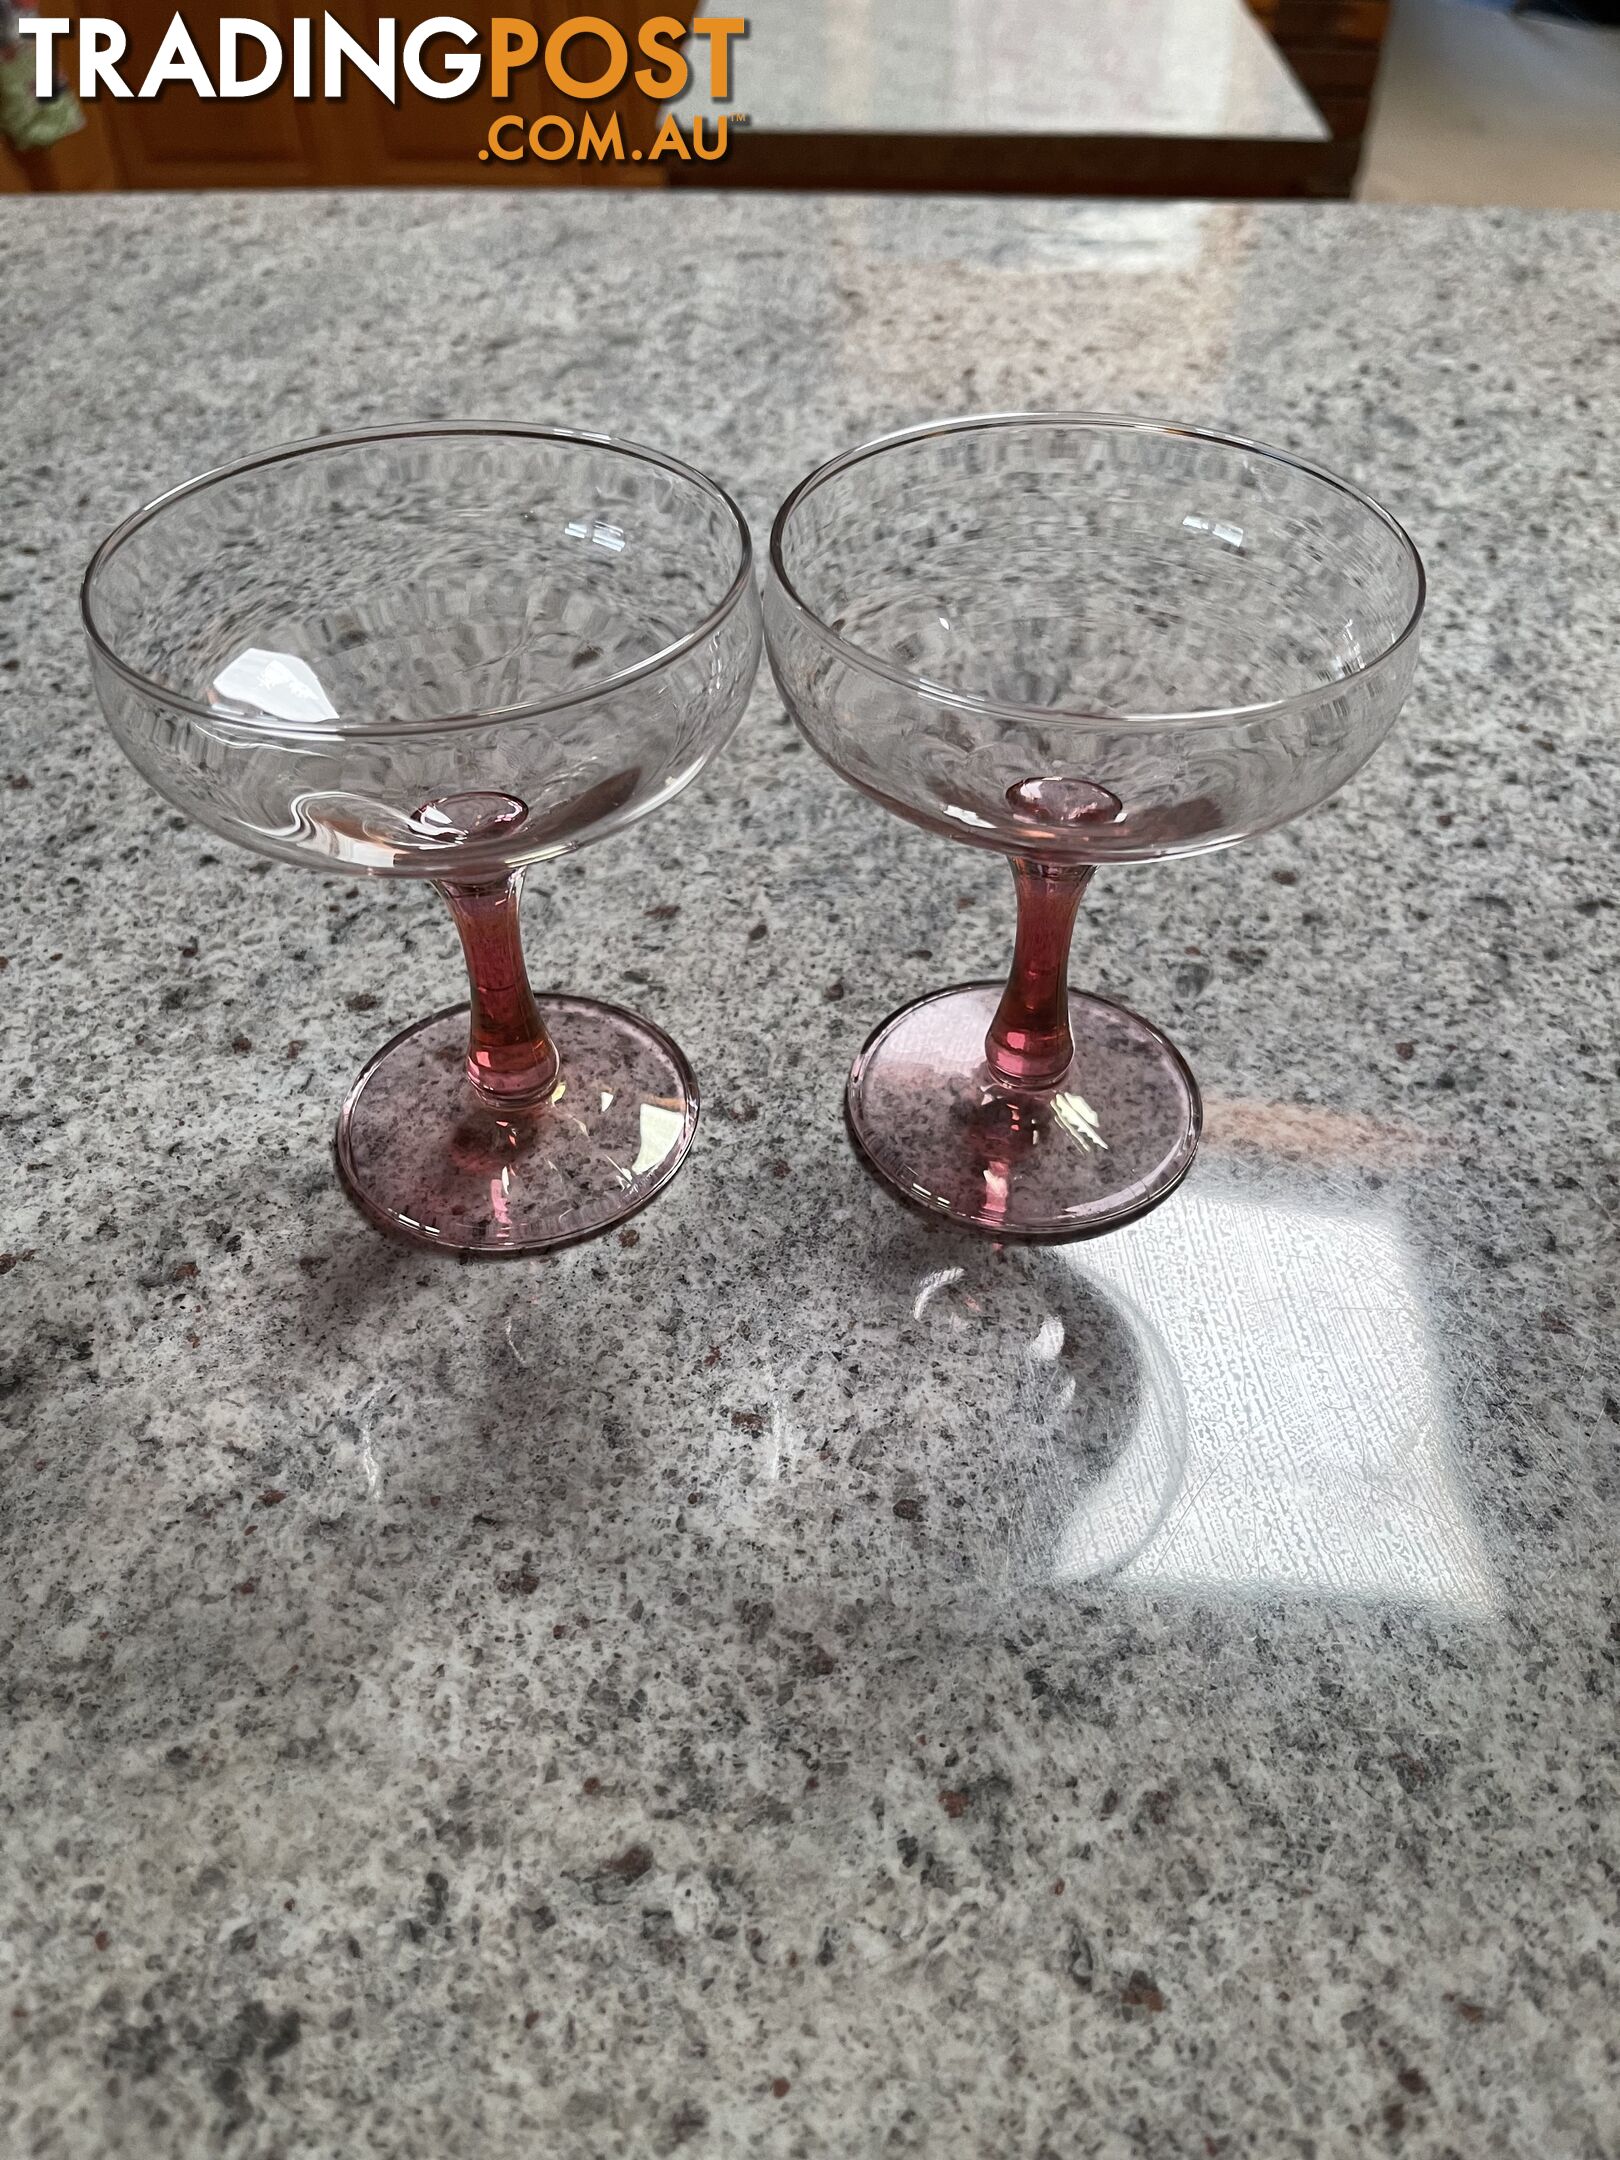 Vintage Pink Stem Glasses